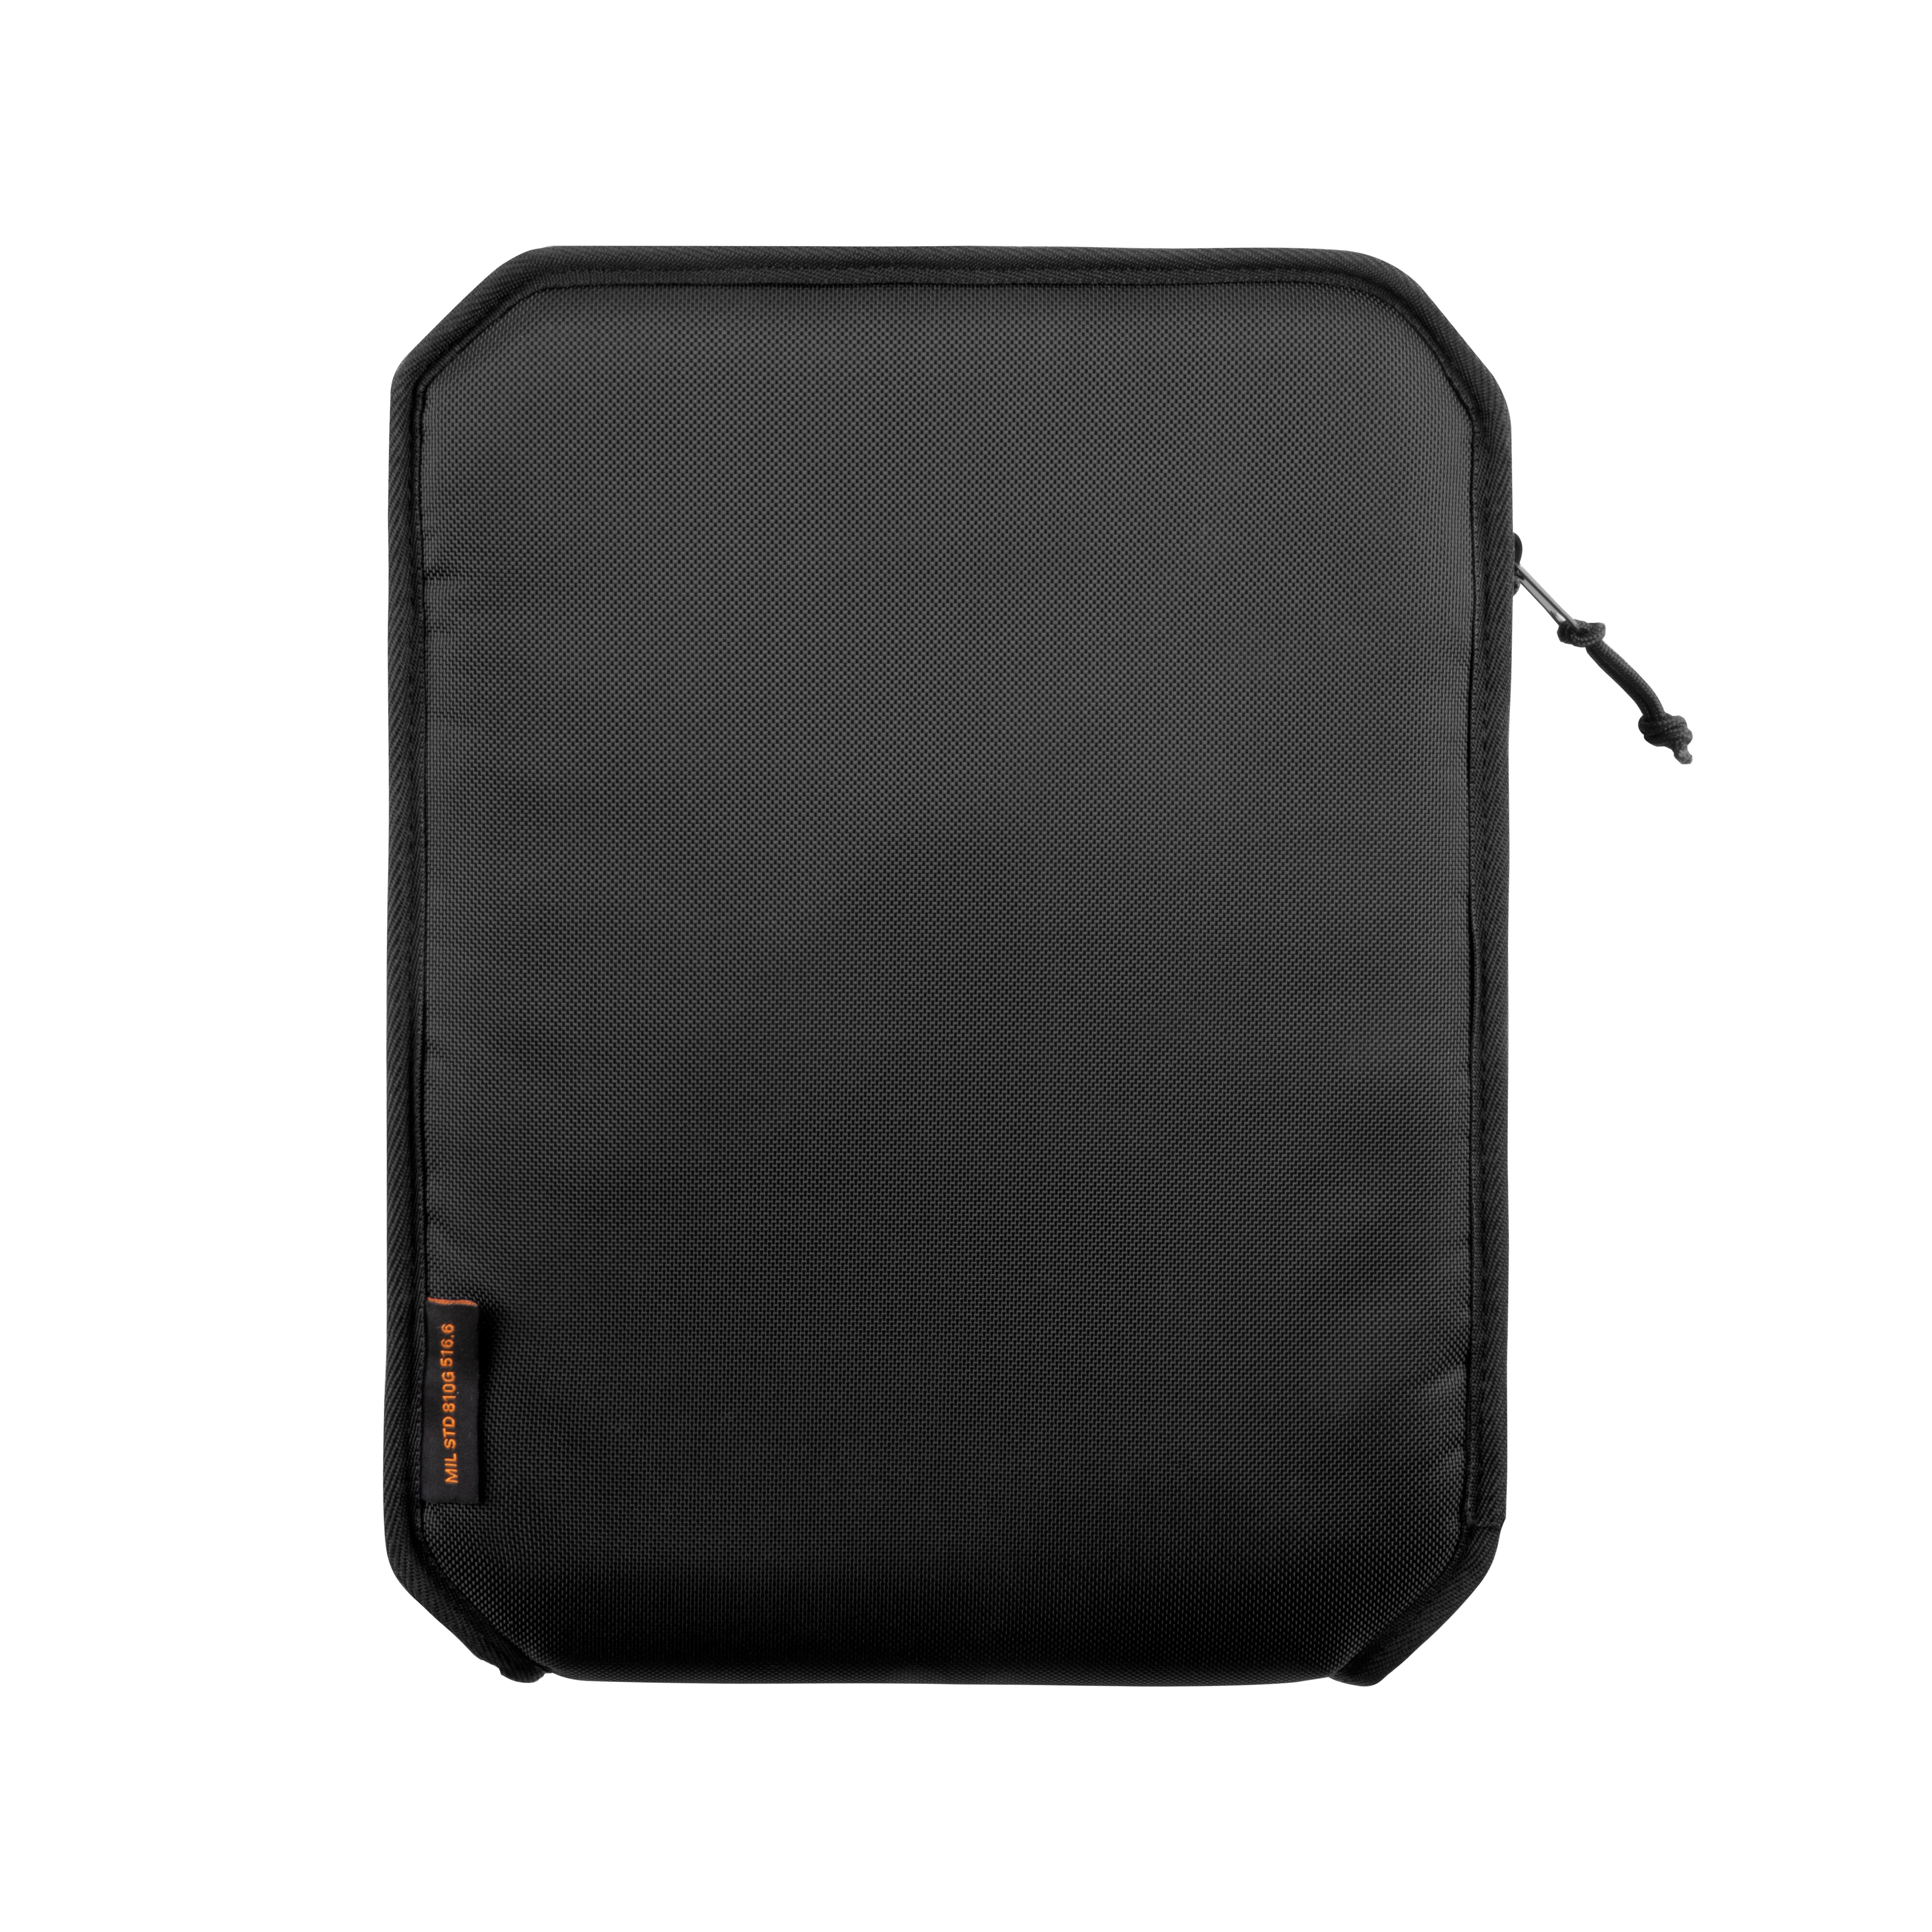 schwarz Lite Tasche Apple für ARMOR Shock 840D Aktentasche URBAN Nylon, Tablet GEAR Sleeve